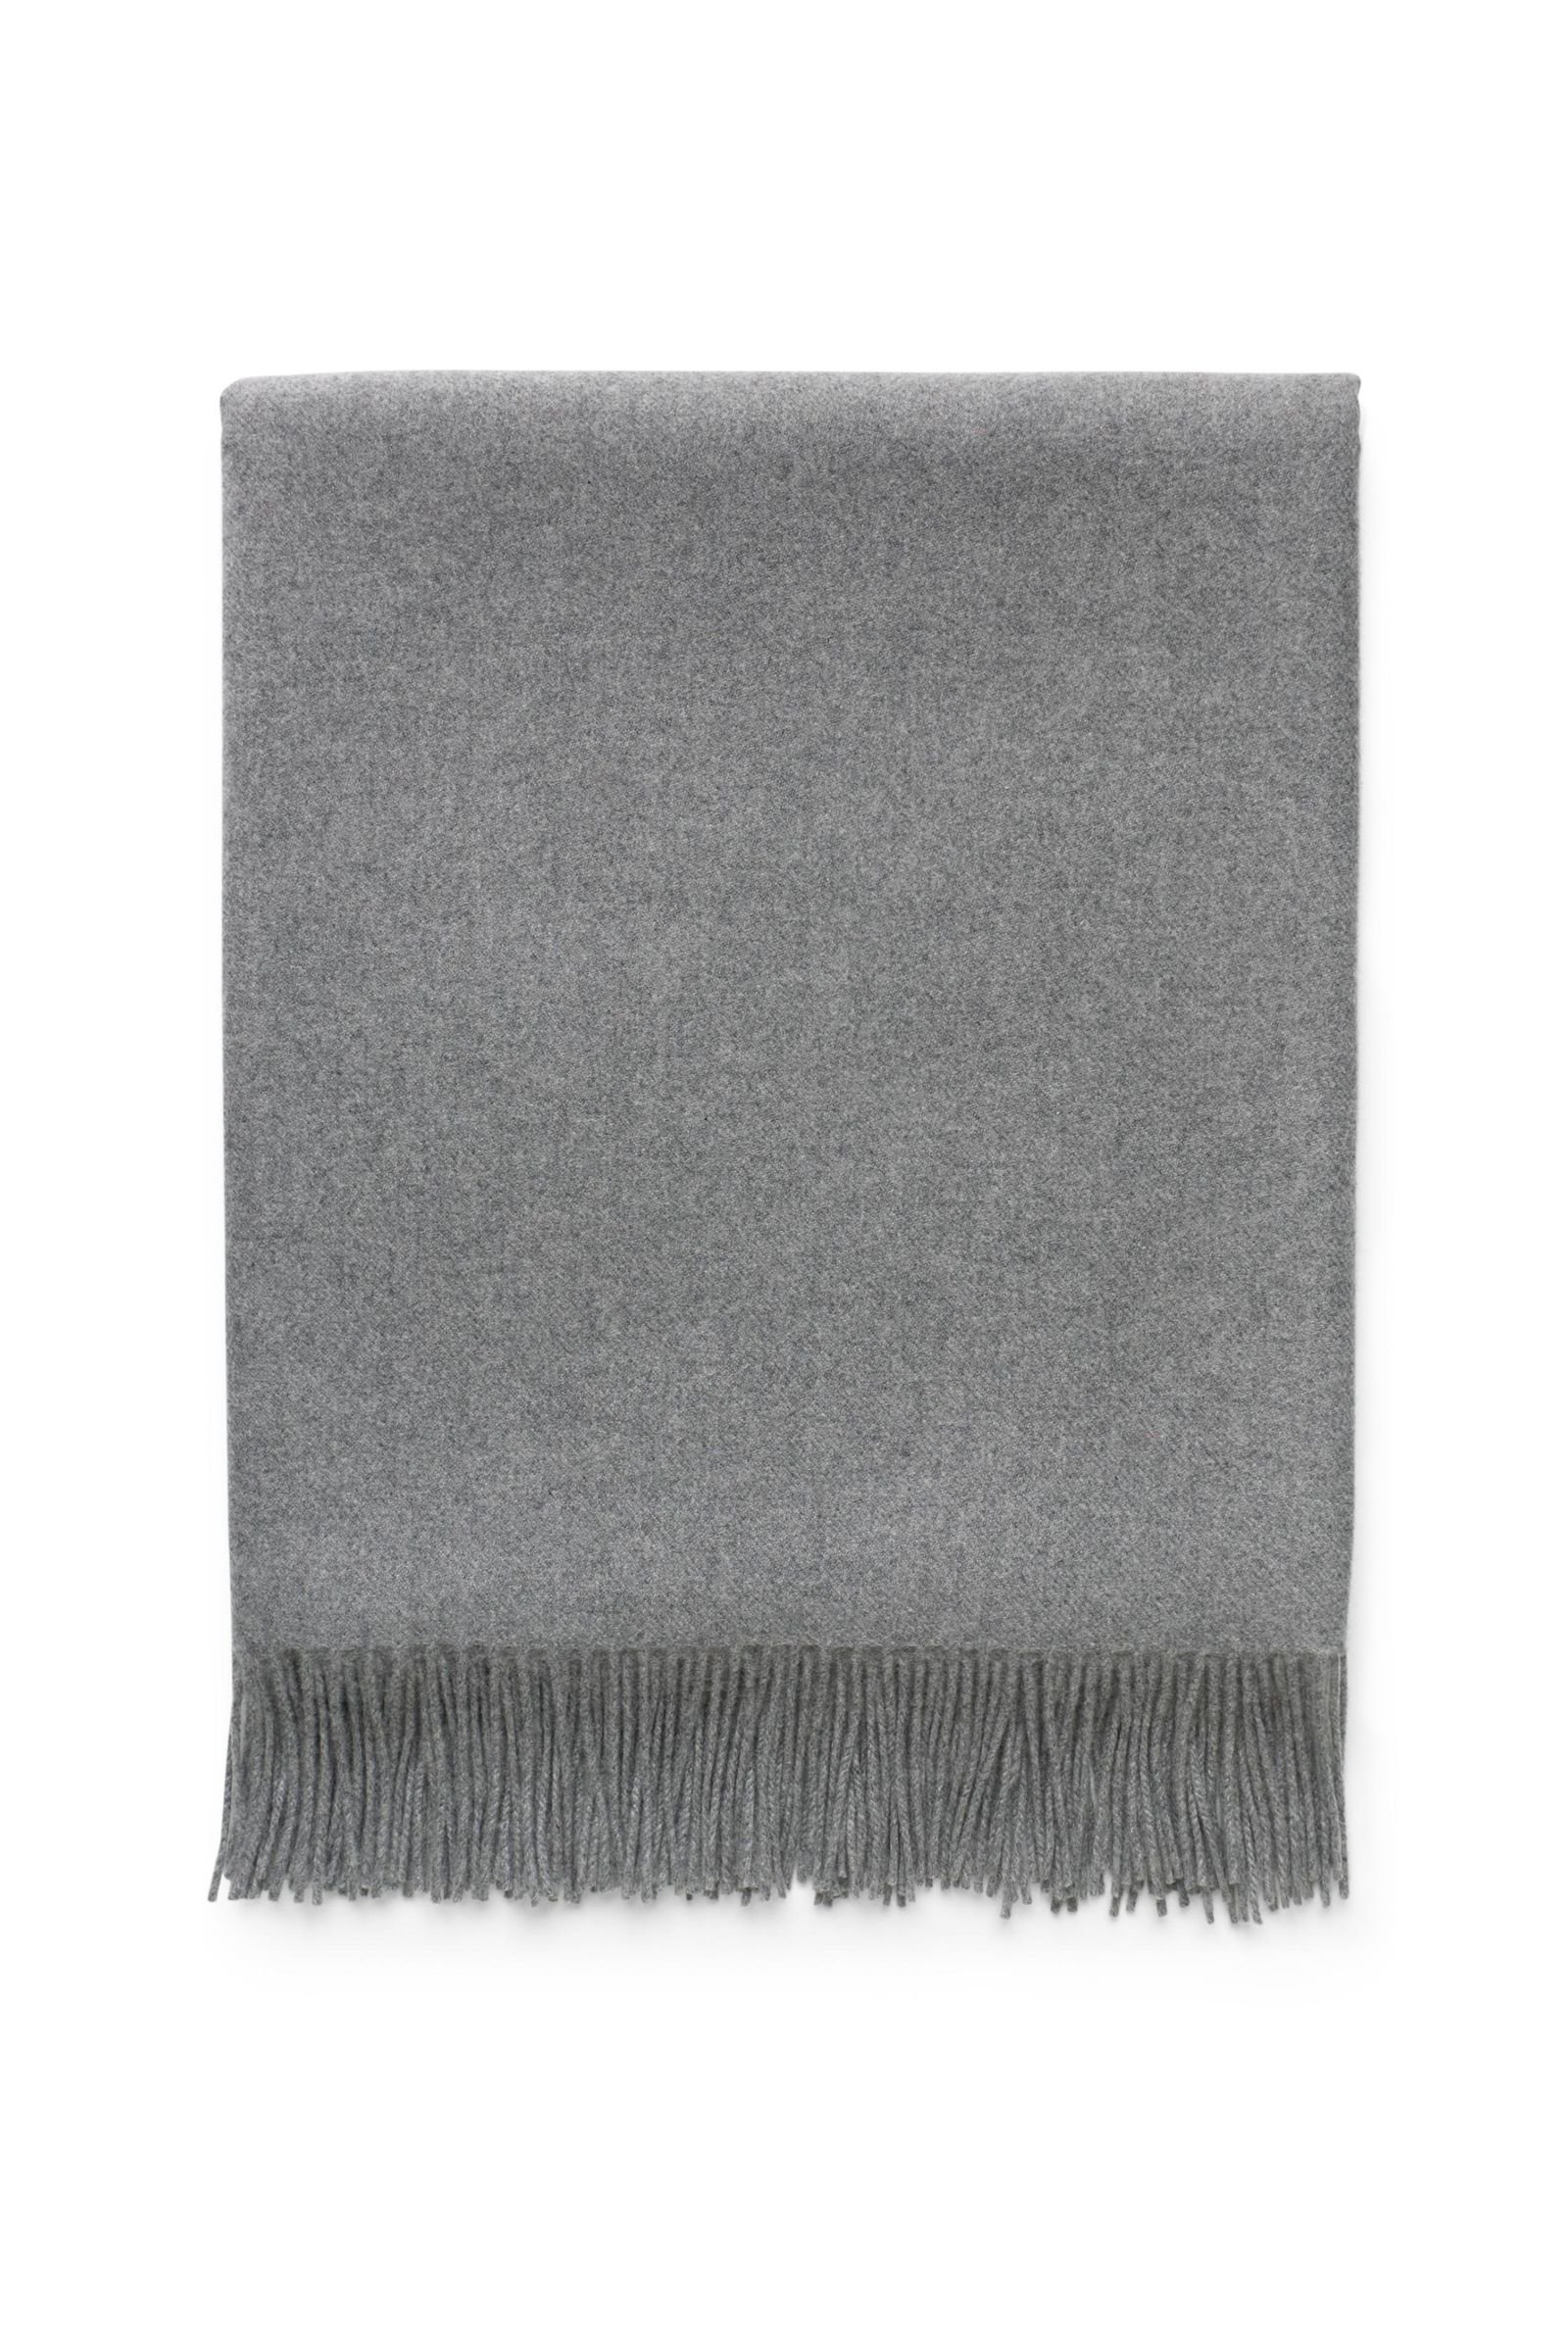 Cashmere blanket grey